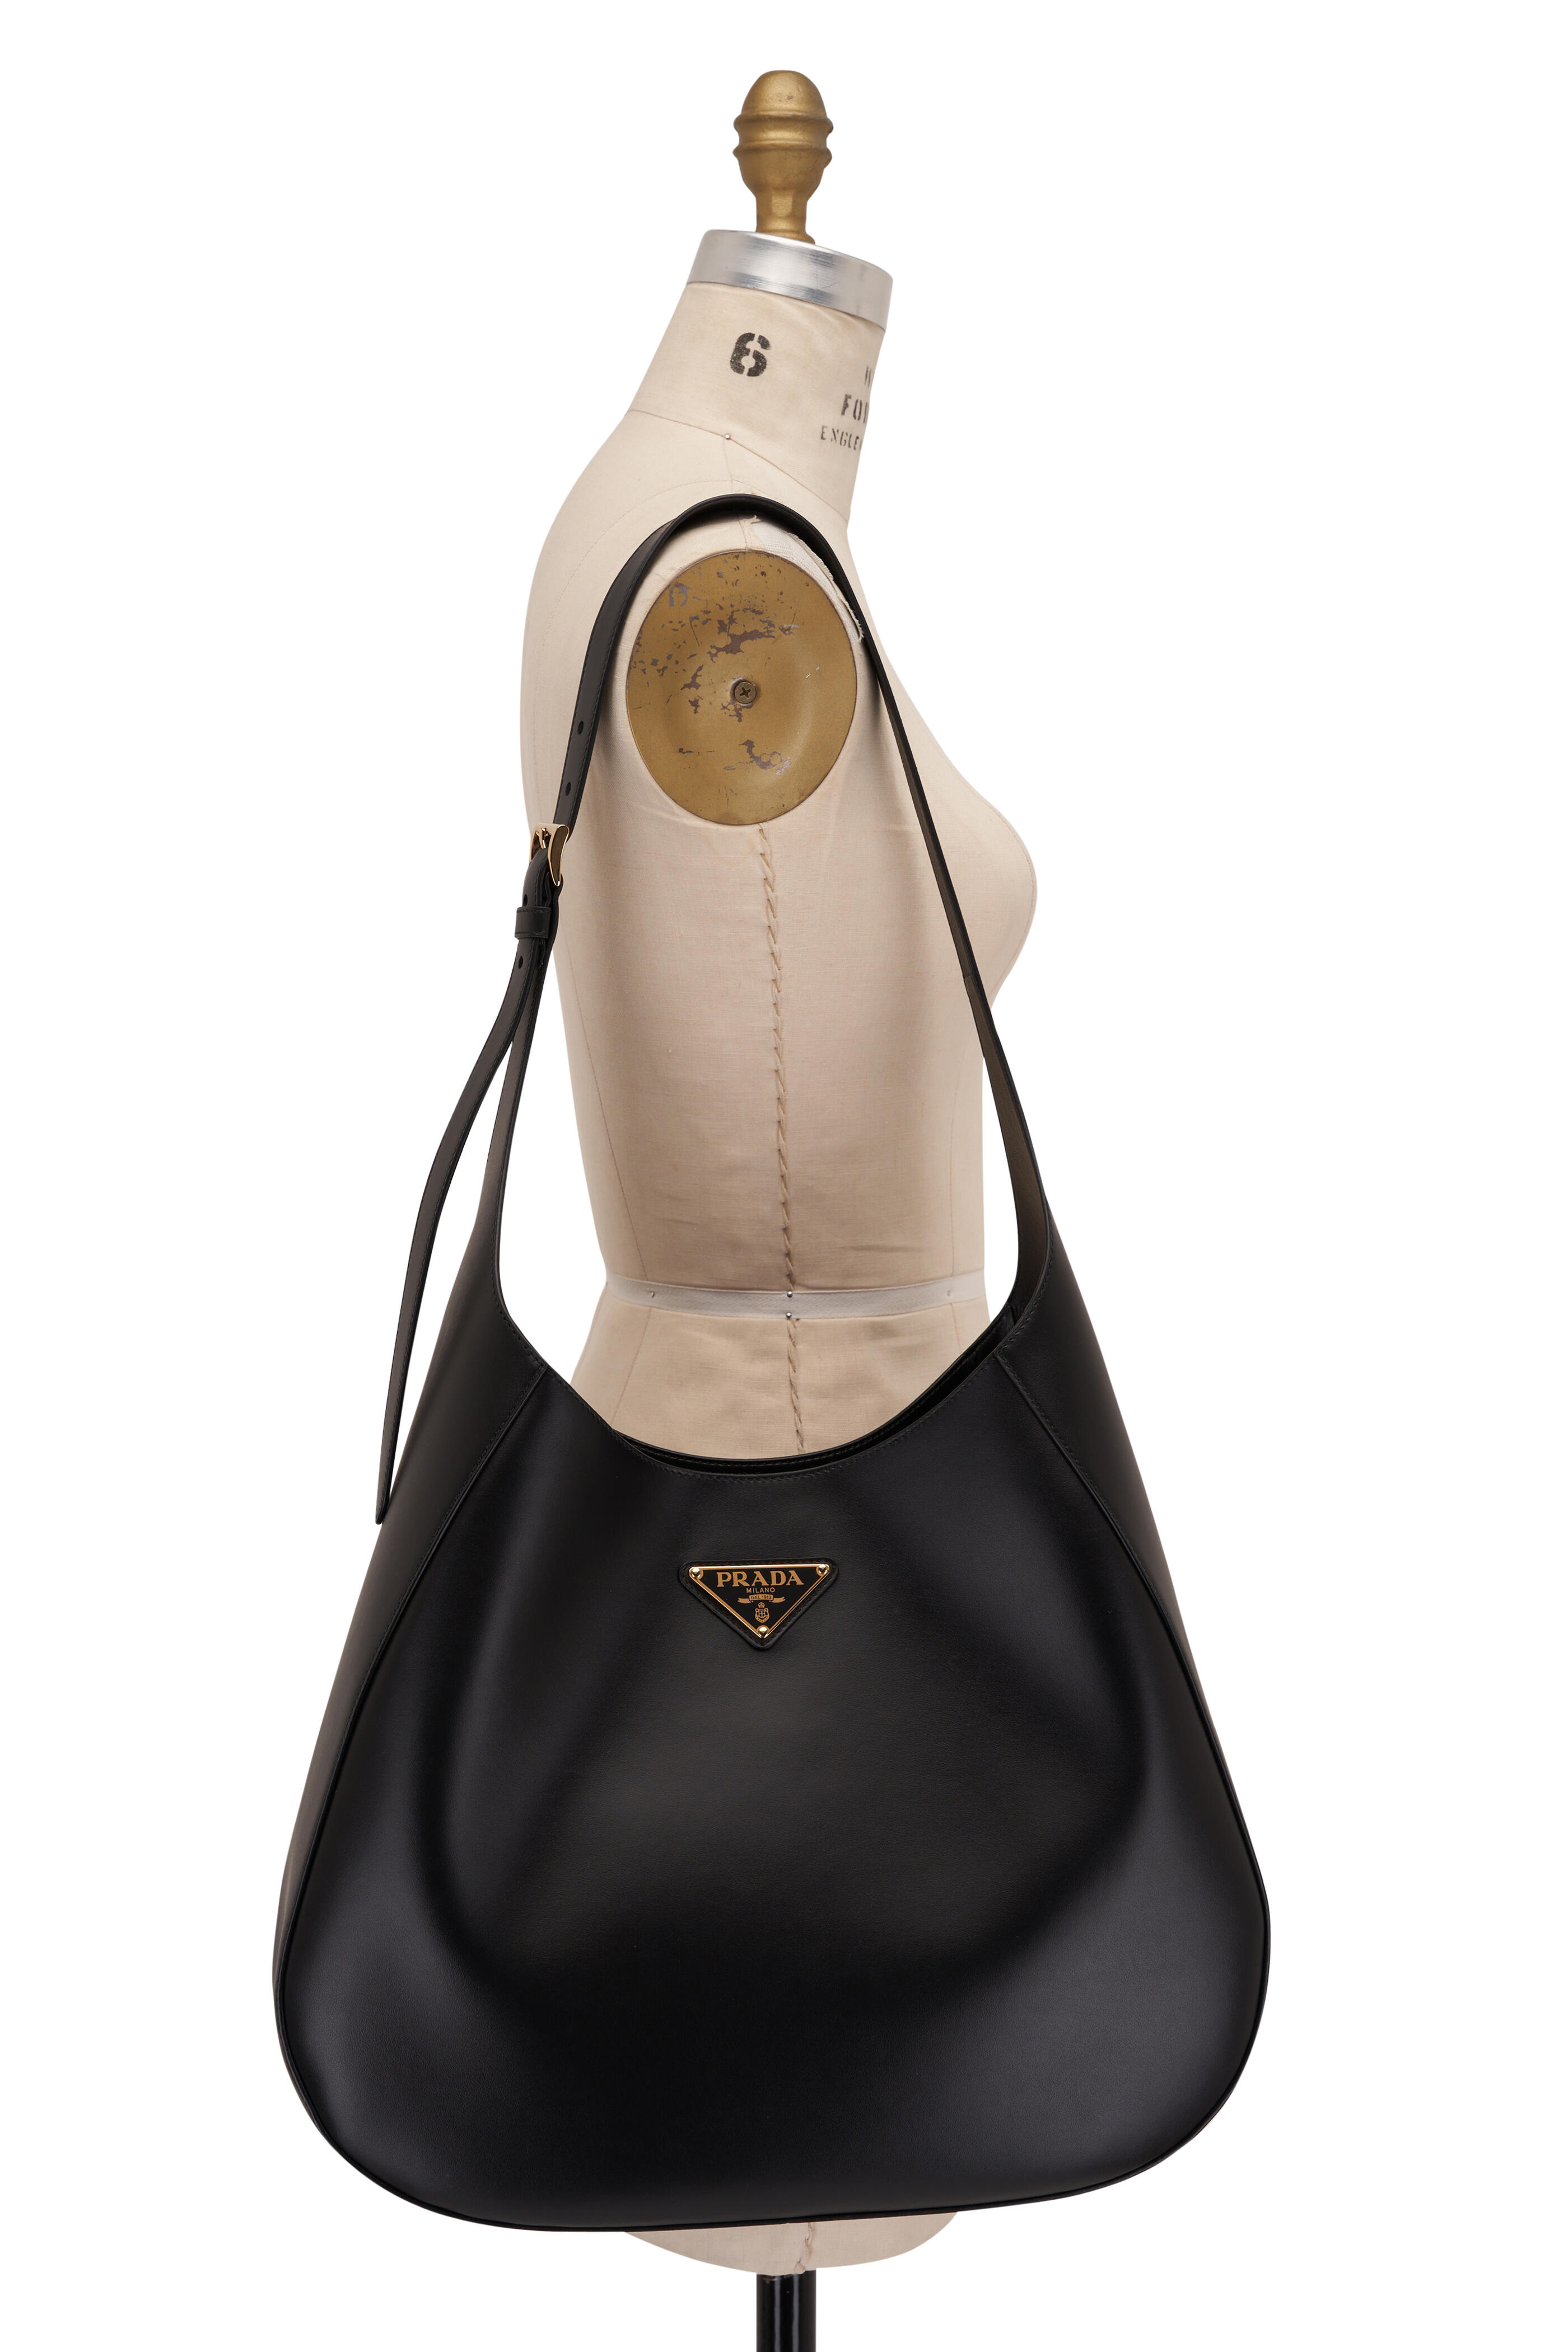 Milano Prada shoulder handbag in 2023  Shoulder handbags, Handbag  shopping, Handbag